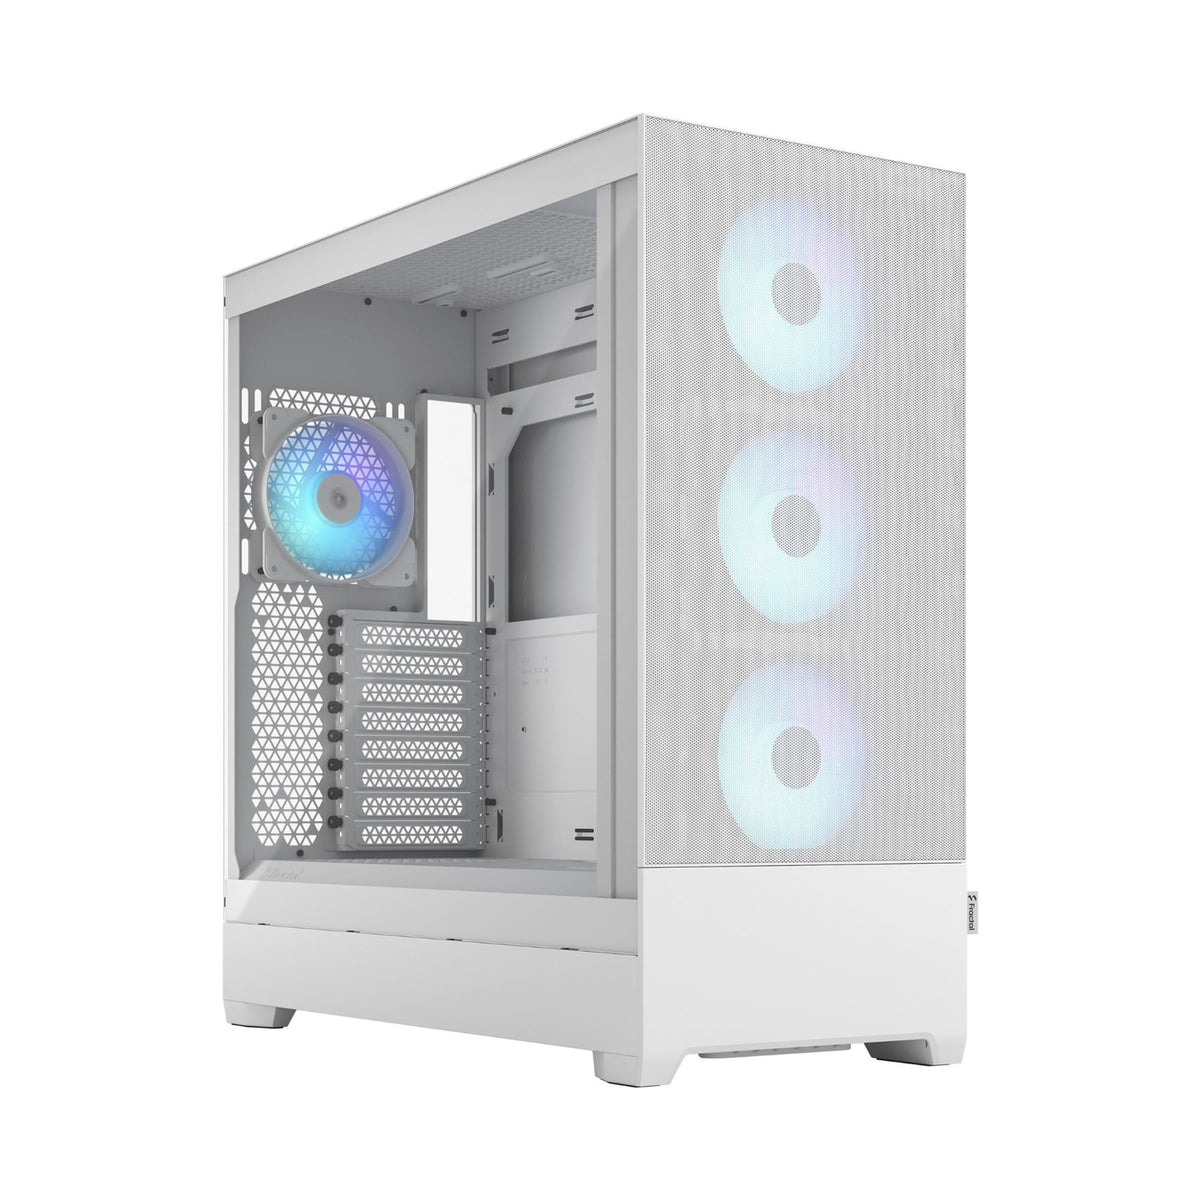 Fractal Design Pop XL Air Tower White PC Case